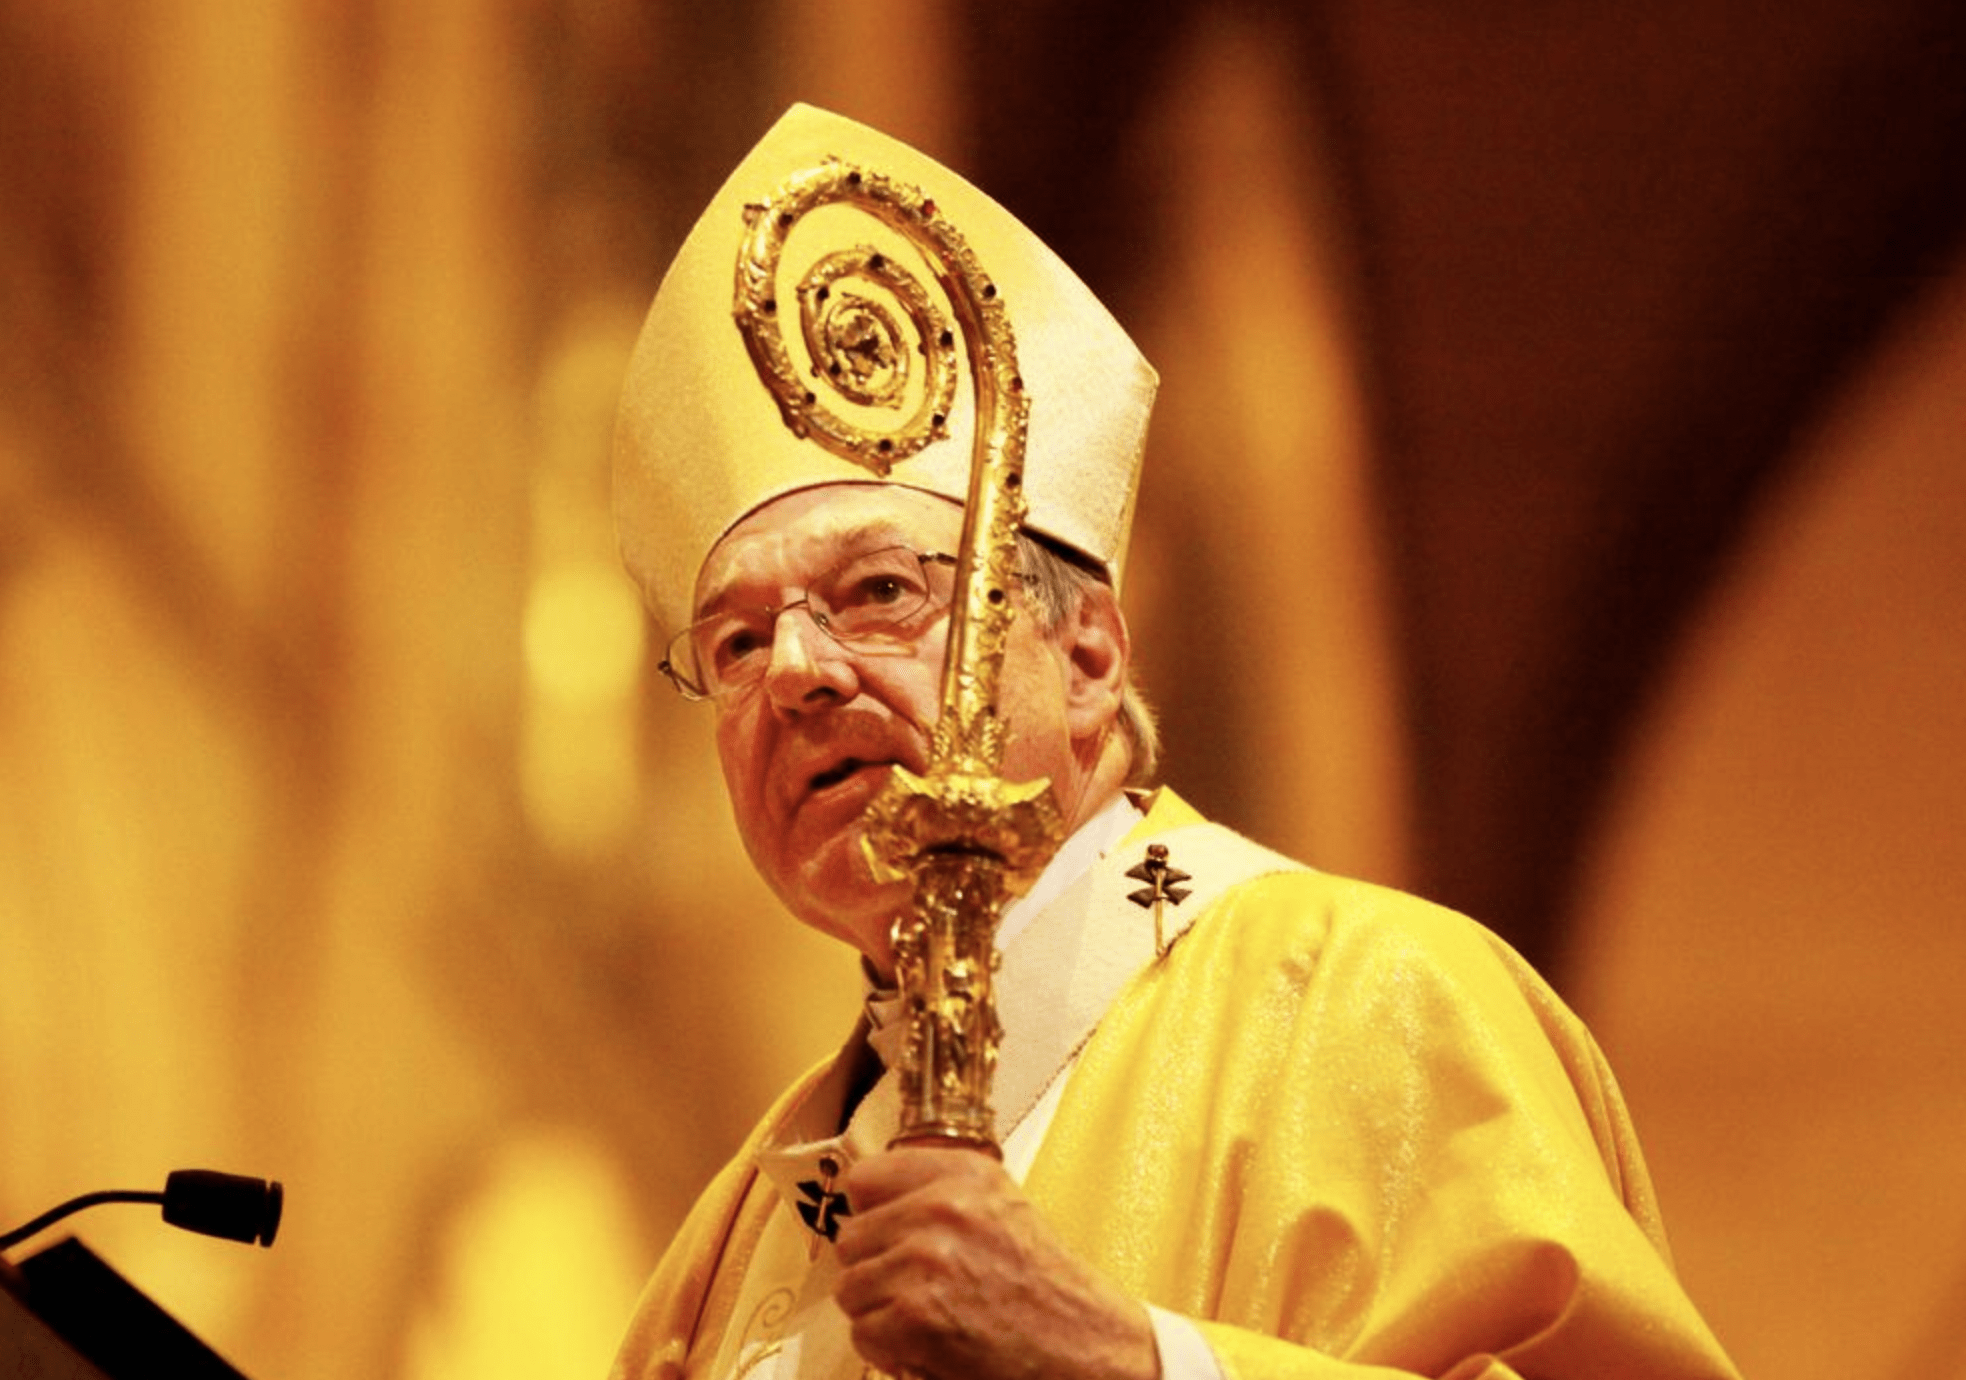 Cardinal George Pell death news